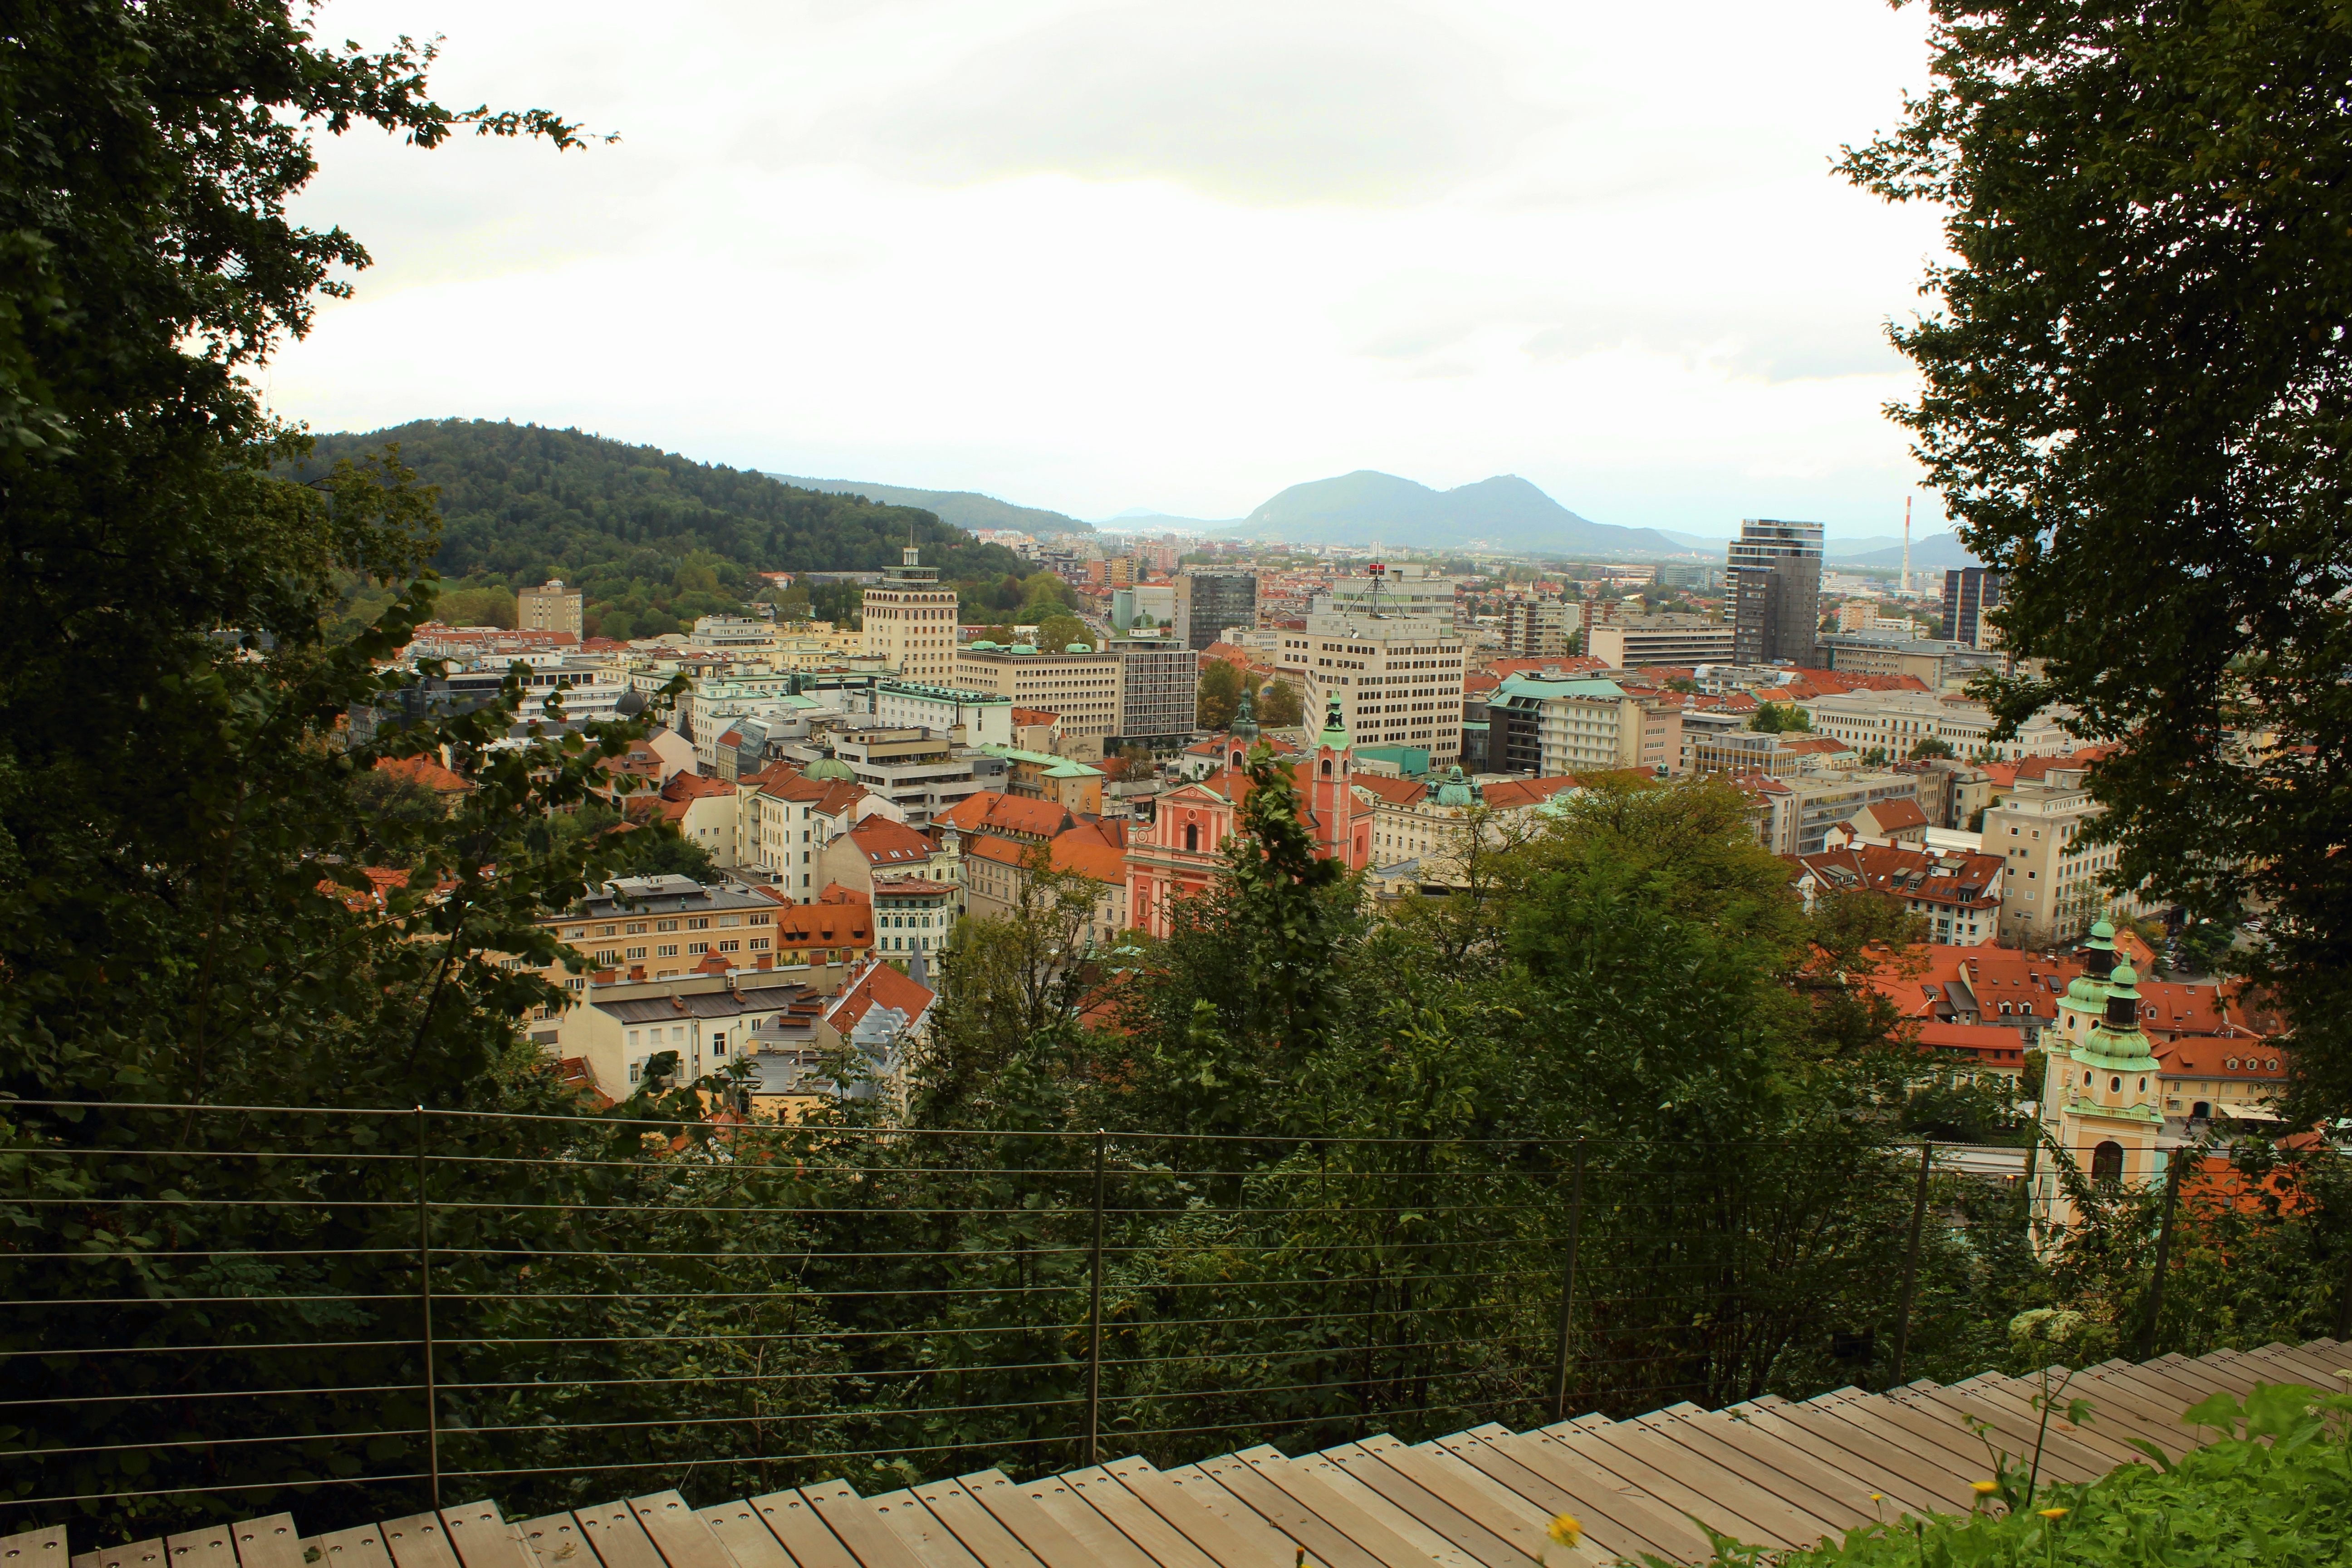 Klick auf's Bild für die besten Cafés, Shops und Tipps für Deinen Citytrip in das wunderschöne Ljubljana!